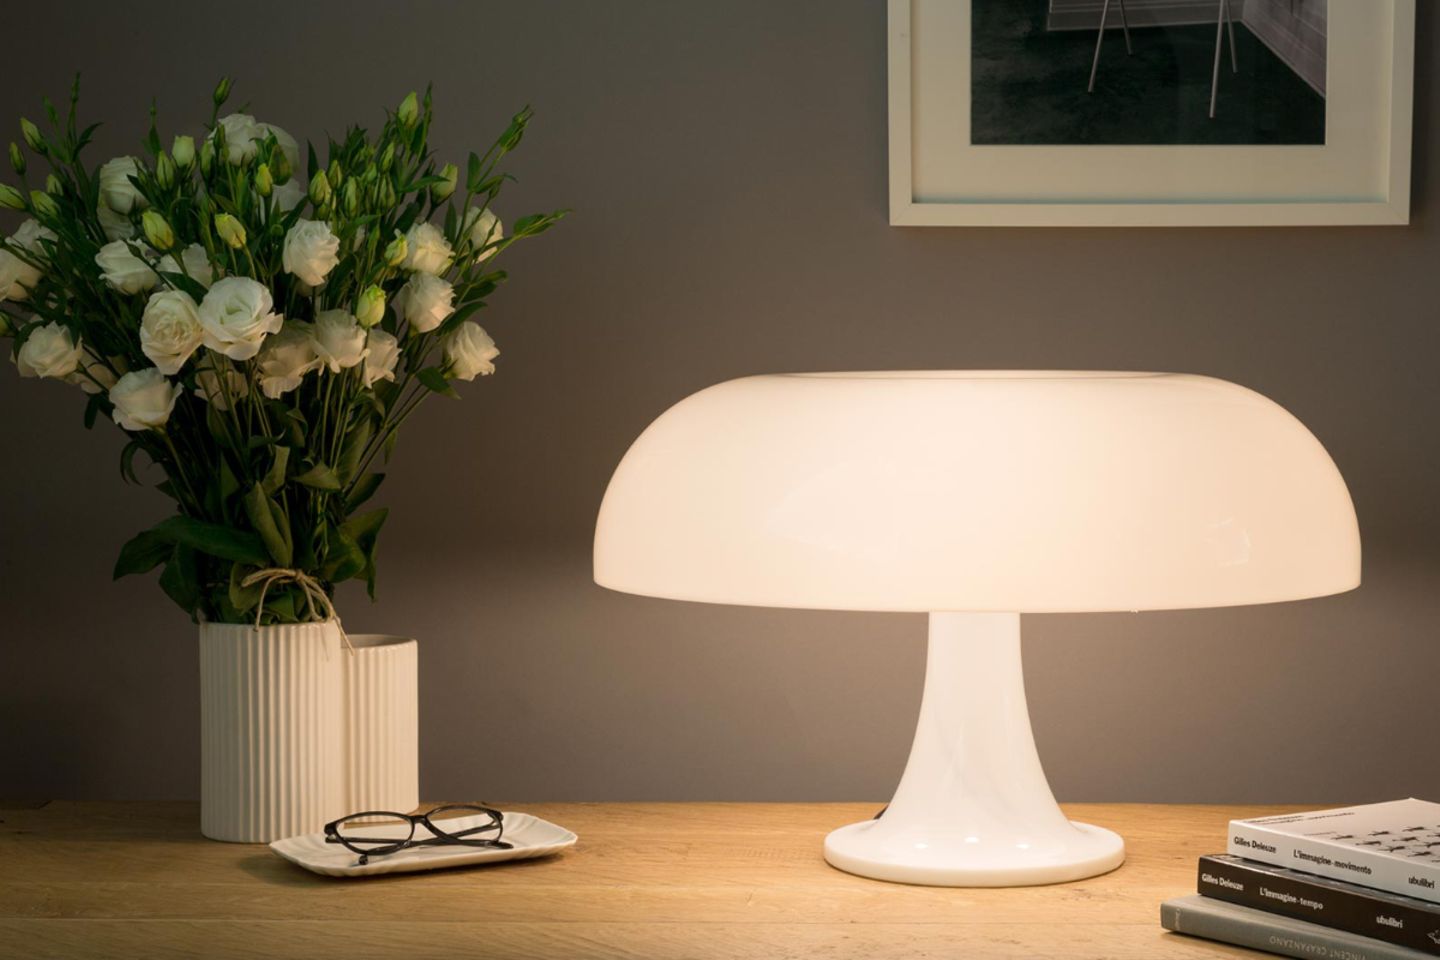 Weiße Kunststoff-Leuchte in ausladender Pilzform auf Nachttisch mit Blumenvase, Brille und Büchern